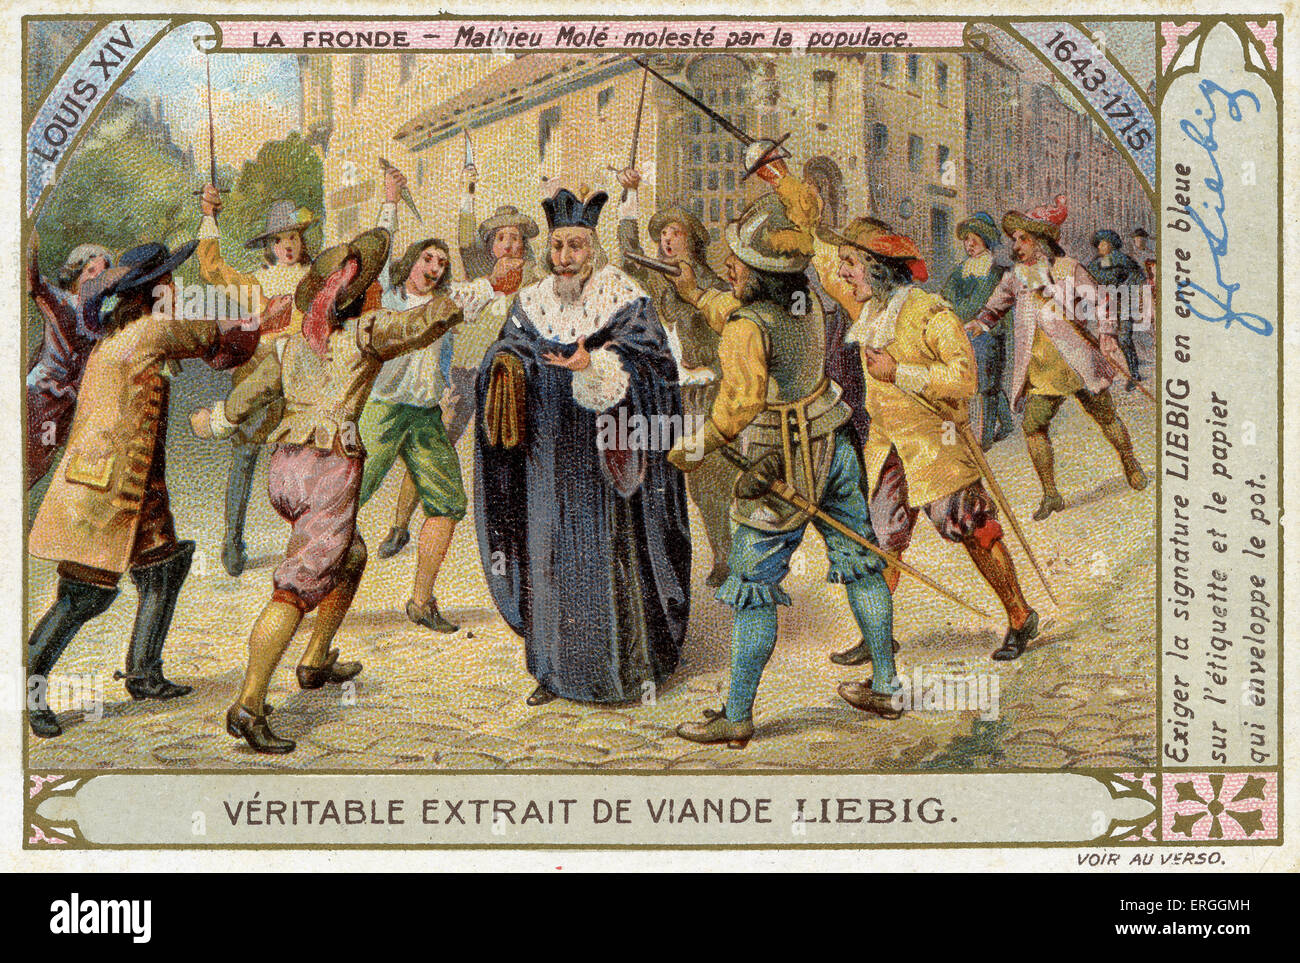 La Fronde: 1648-1653